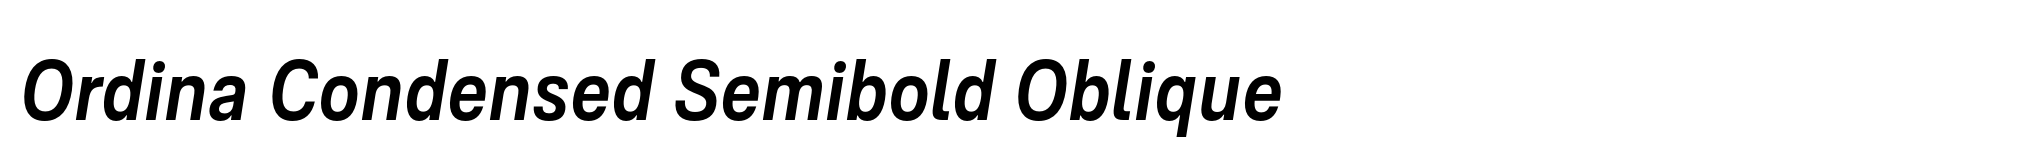 Ordina Condensed Semibold Oblique image